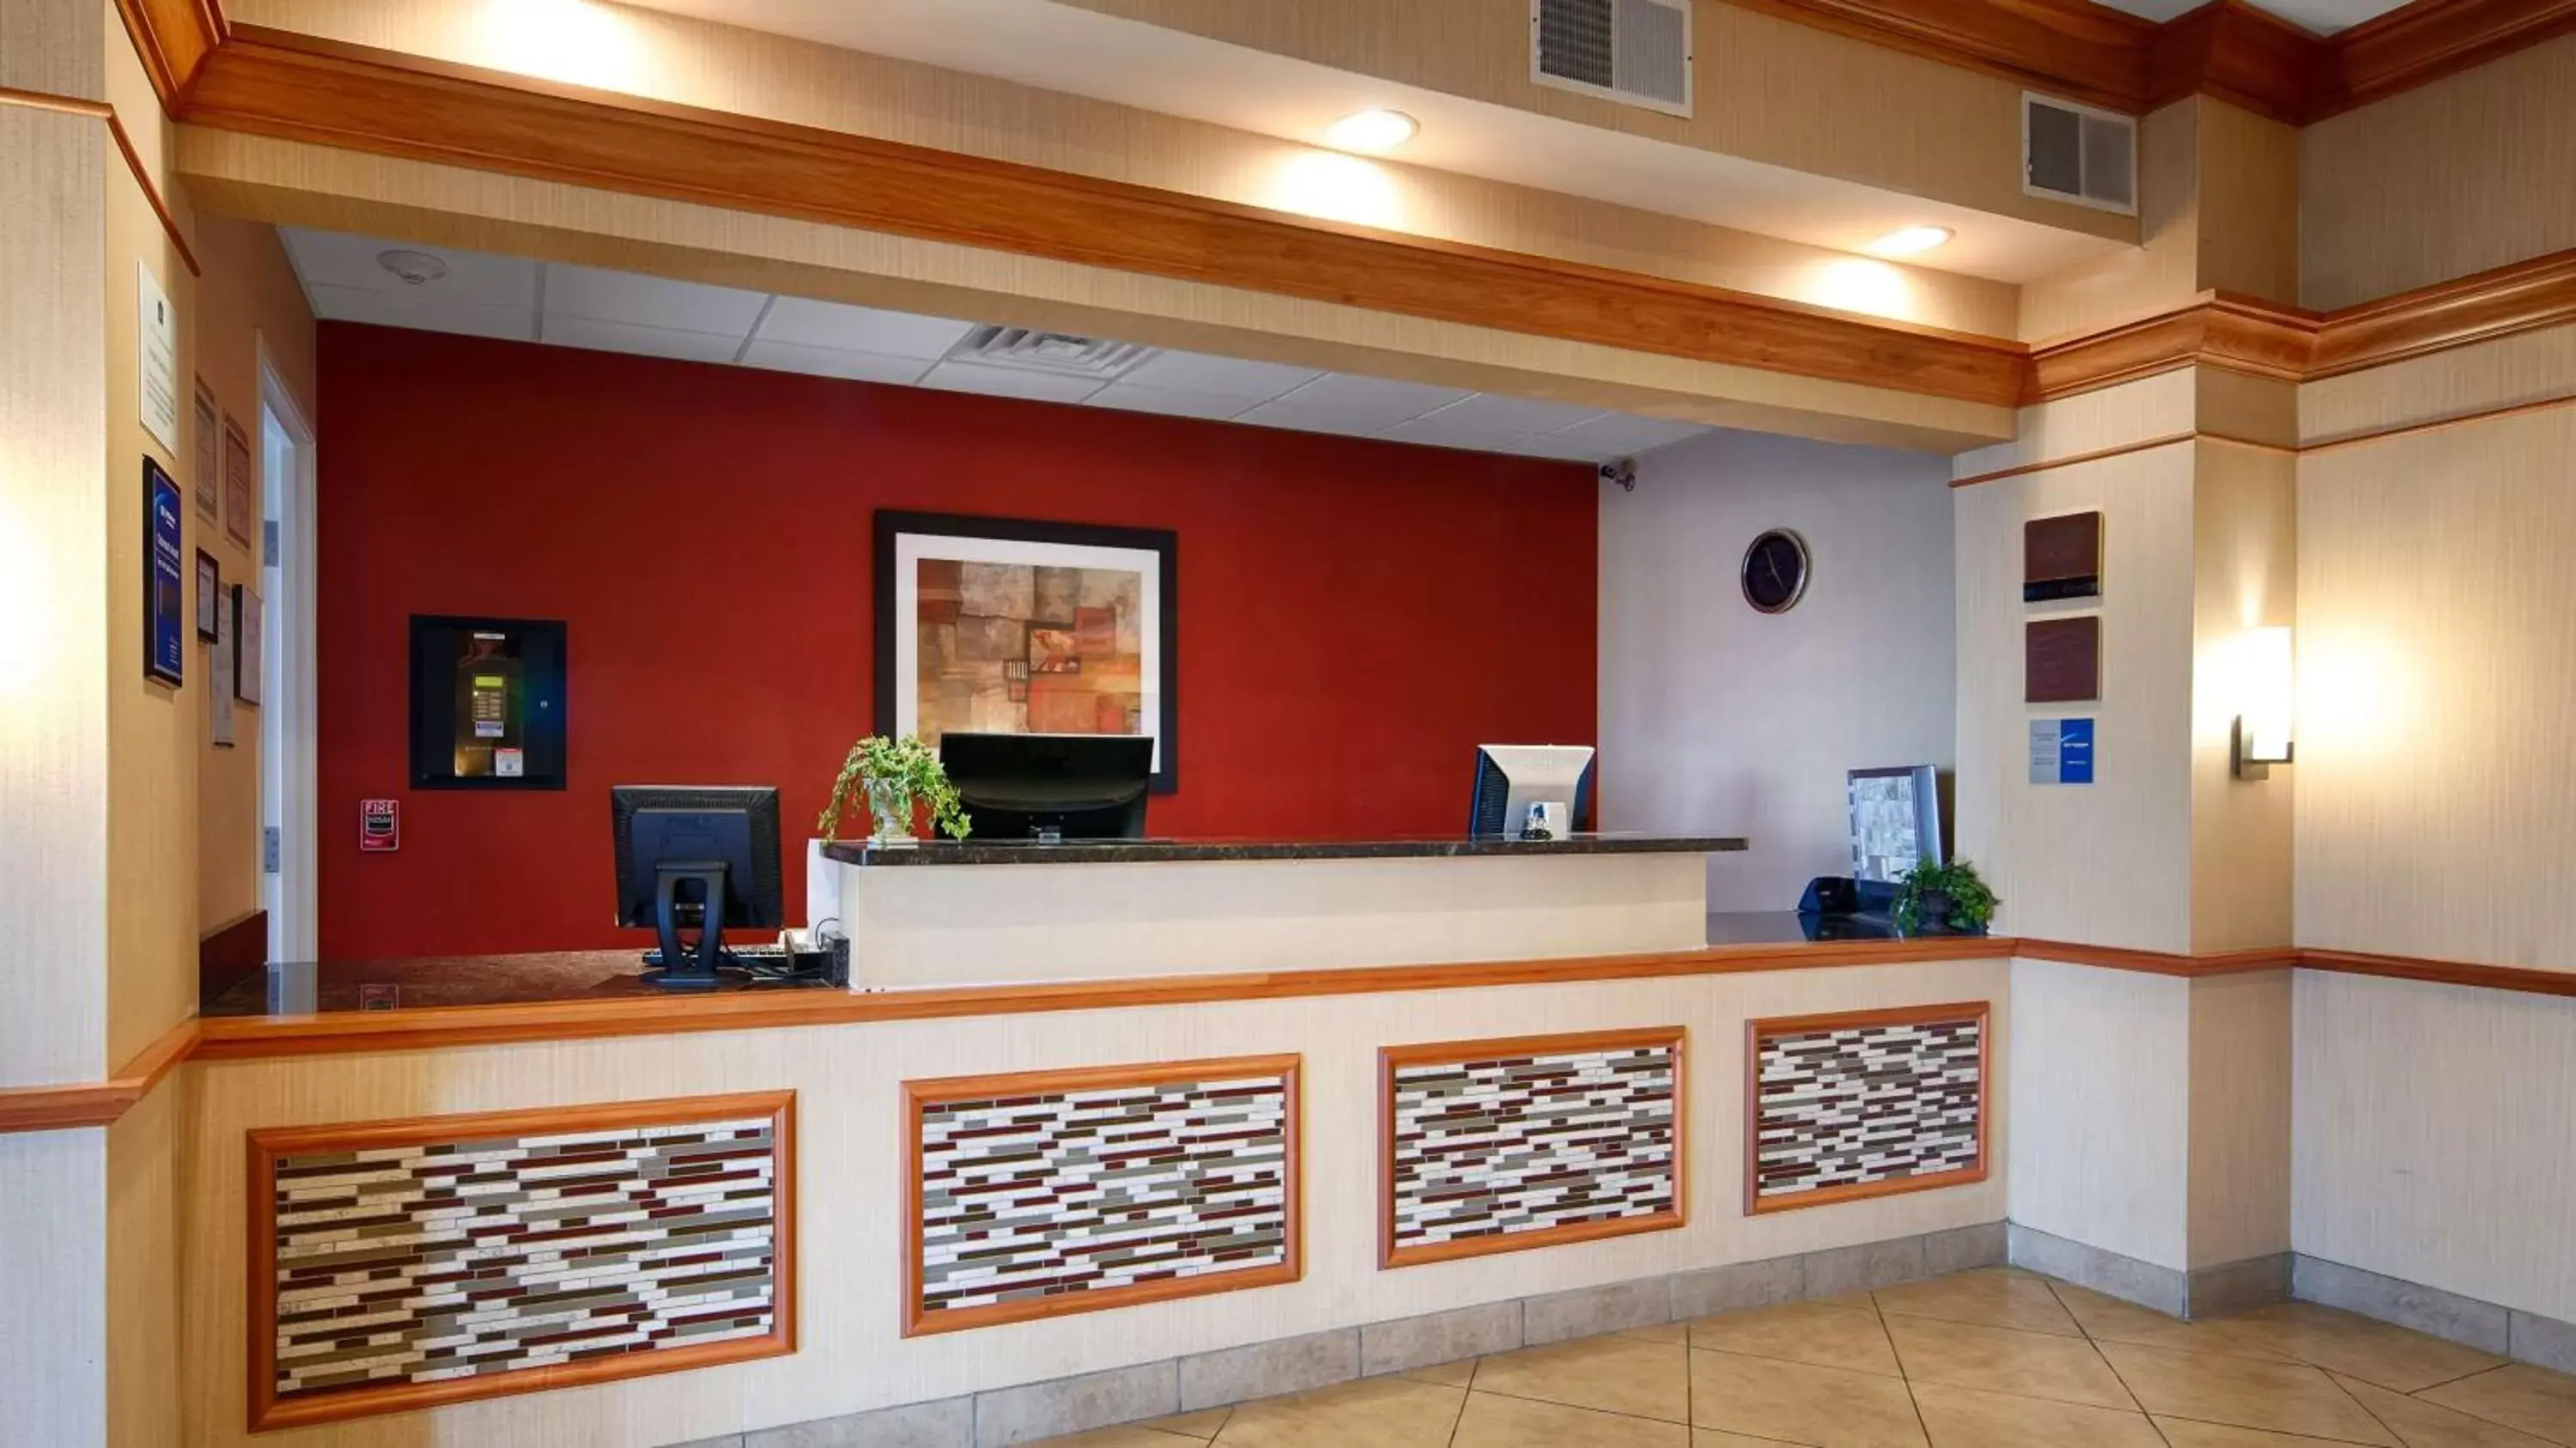 Lobby or reception, Lobby/Reception in Best Western Plus Pontoon Beach